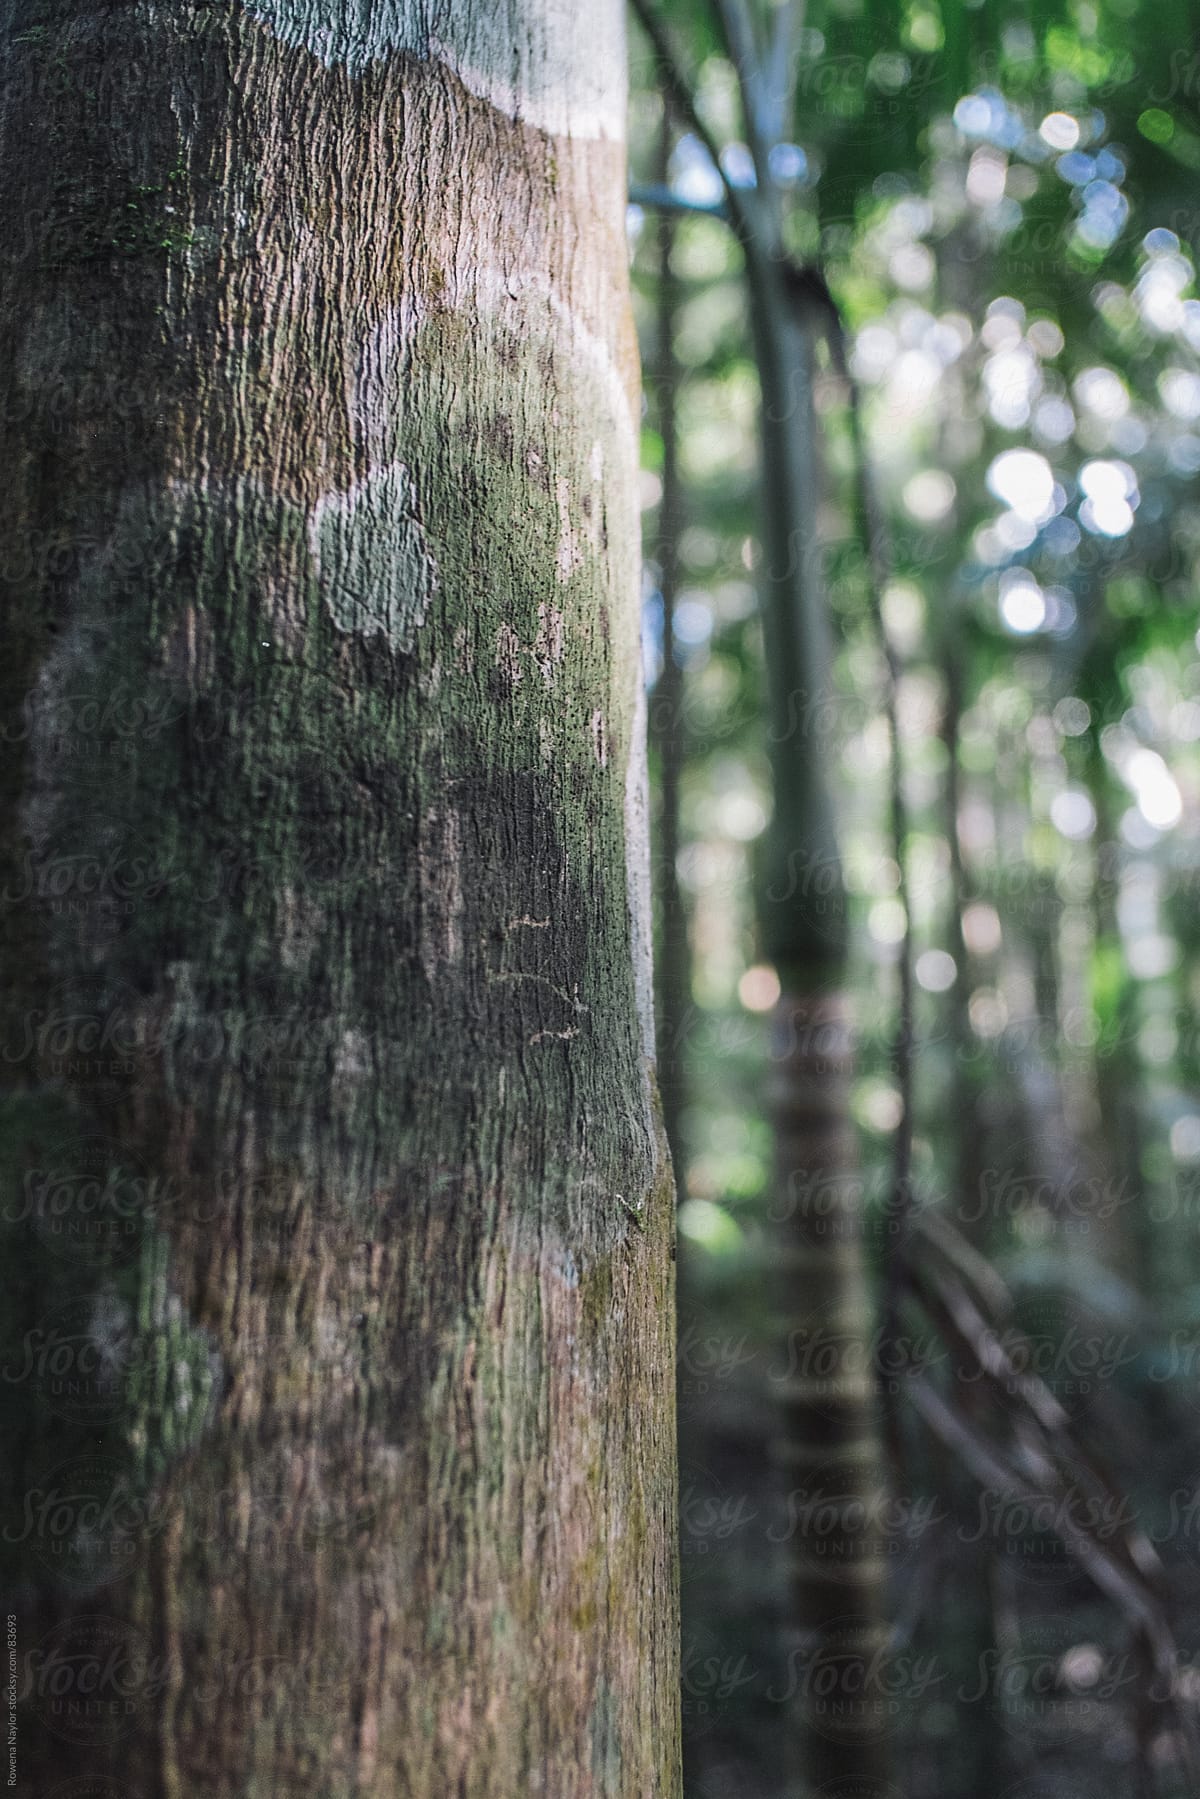 Tree bark in rainforest